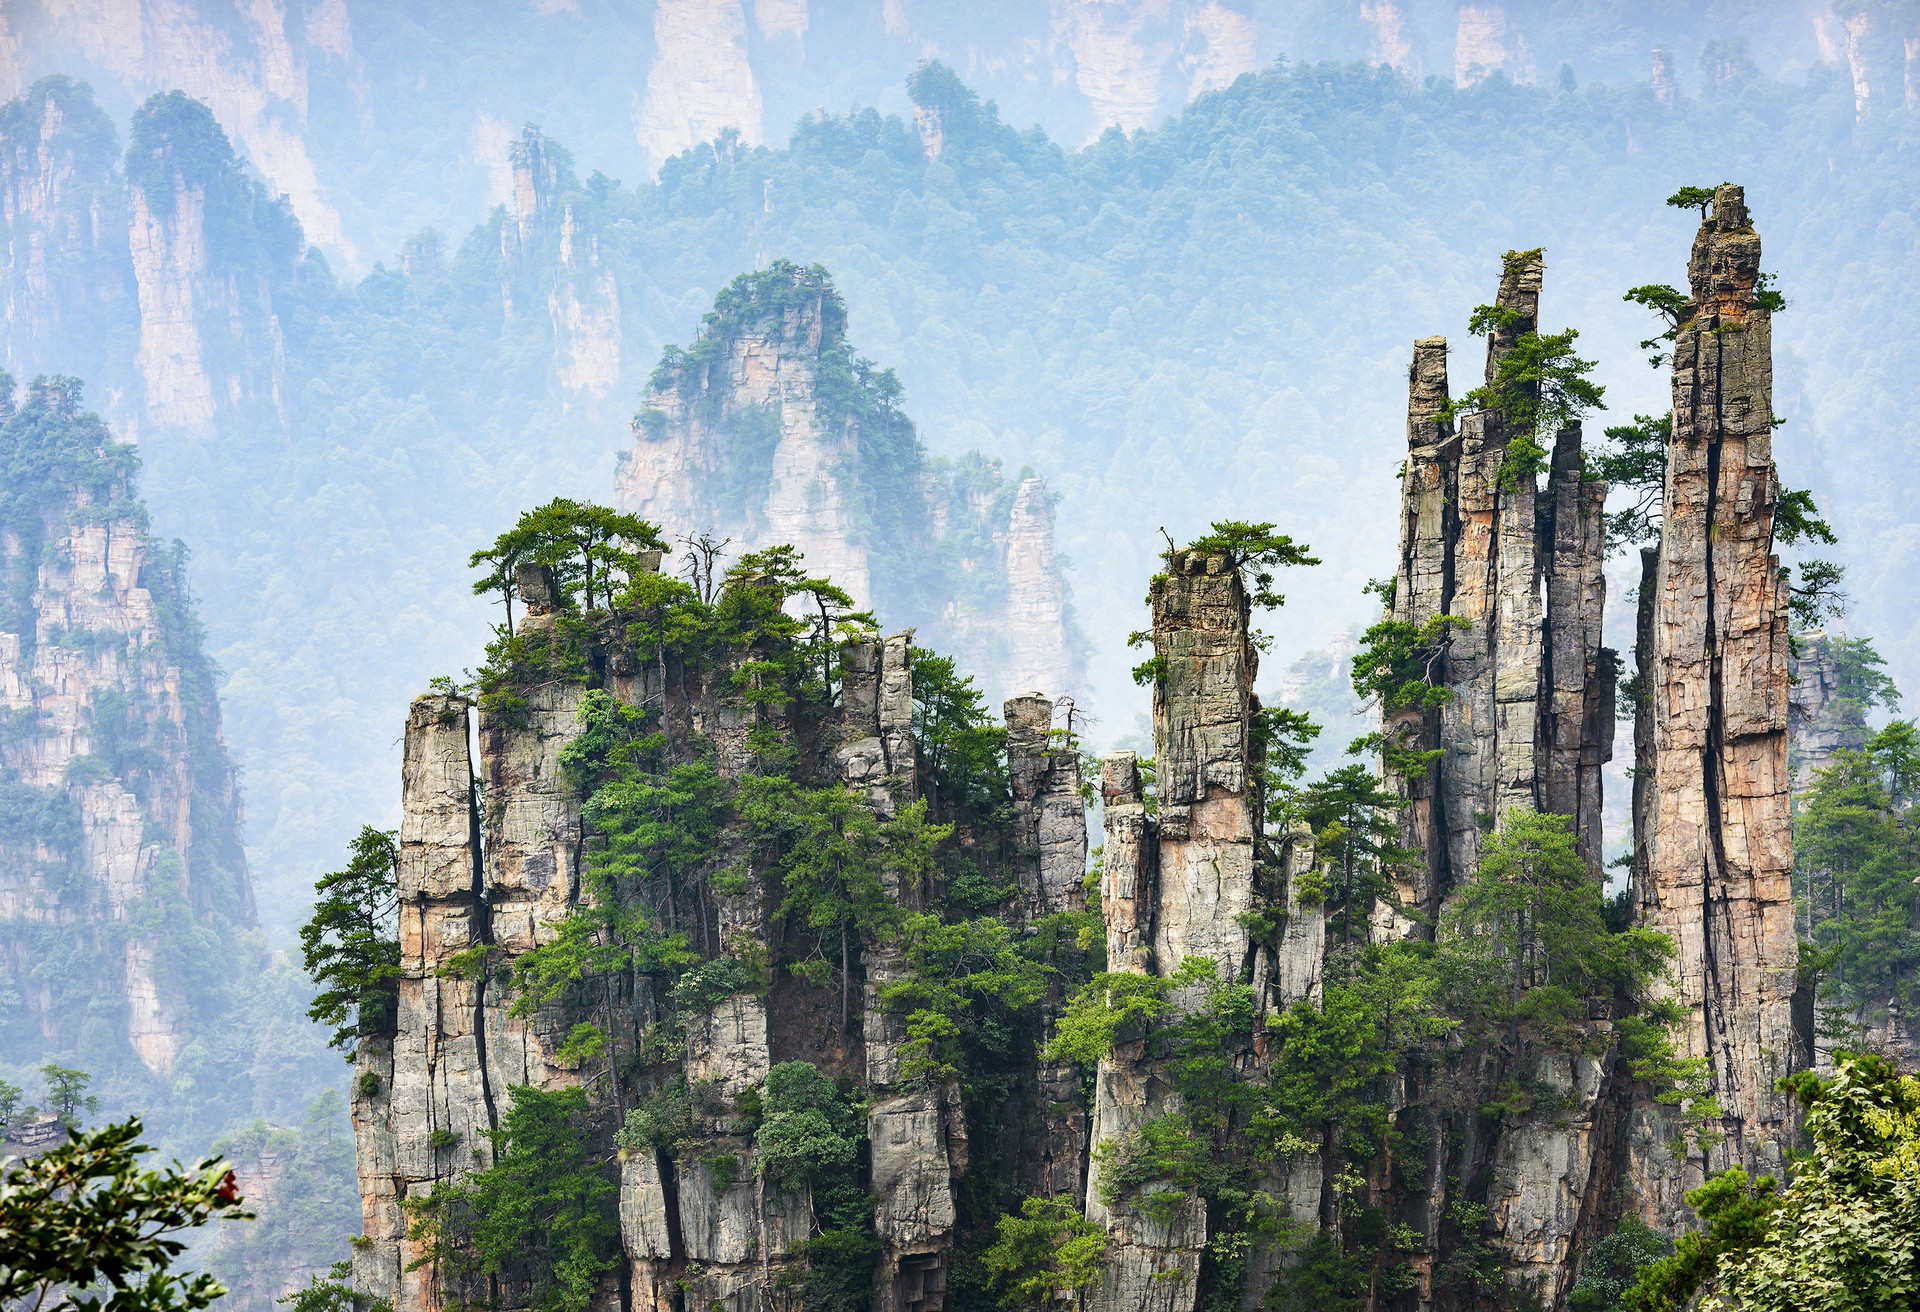 Chińska prowincja Hunan to dom imponujących, przypominajacych wieże skał